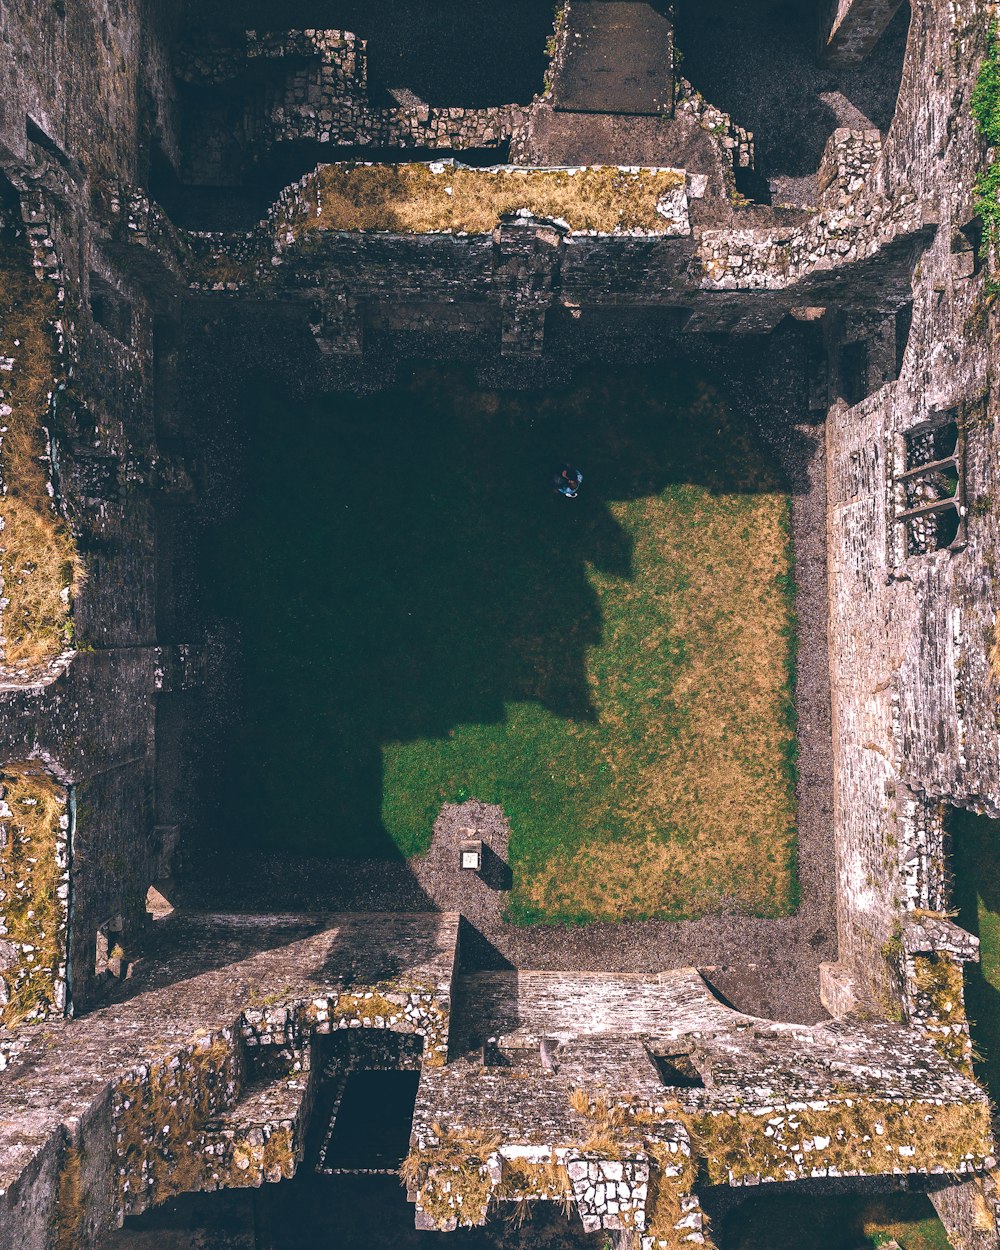 birds-eye view of concrete ruins